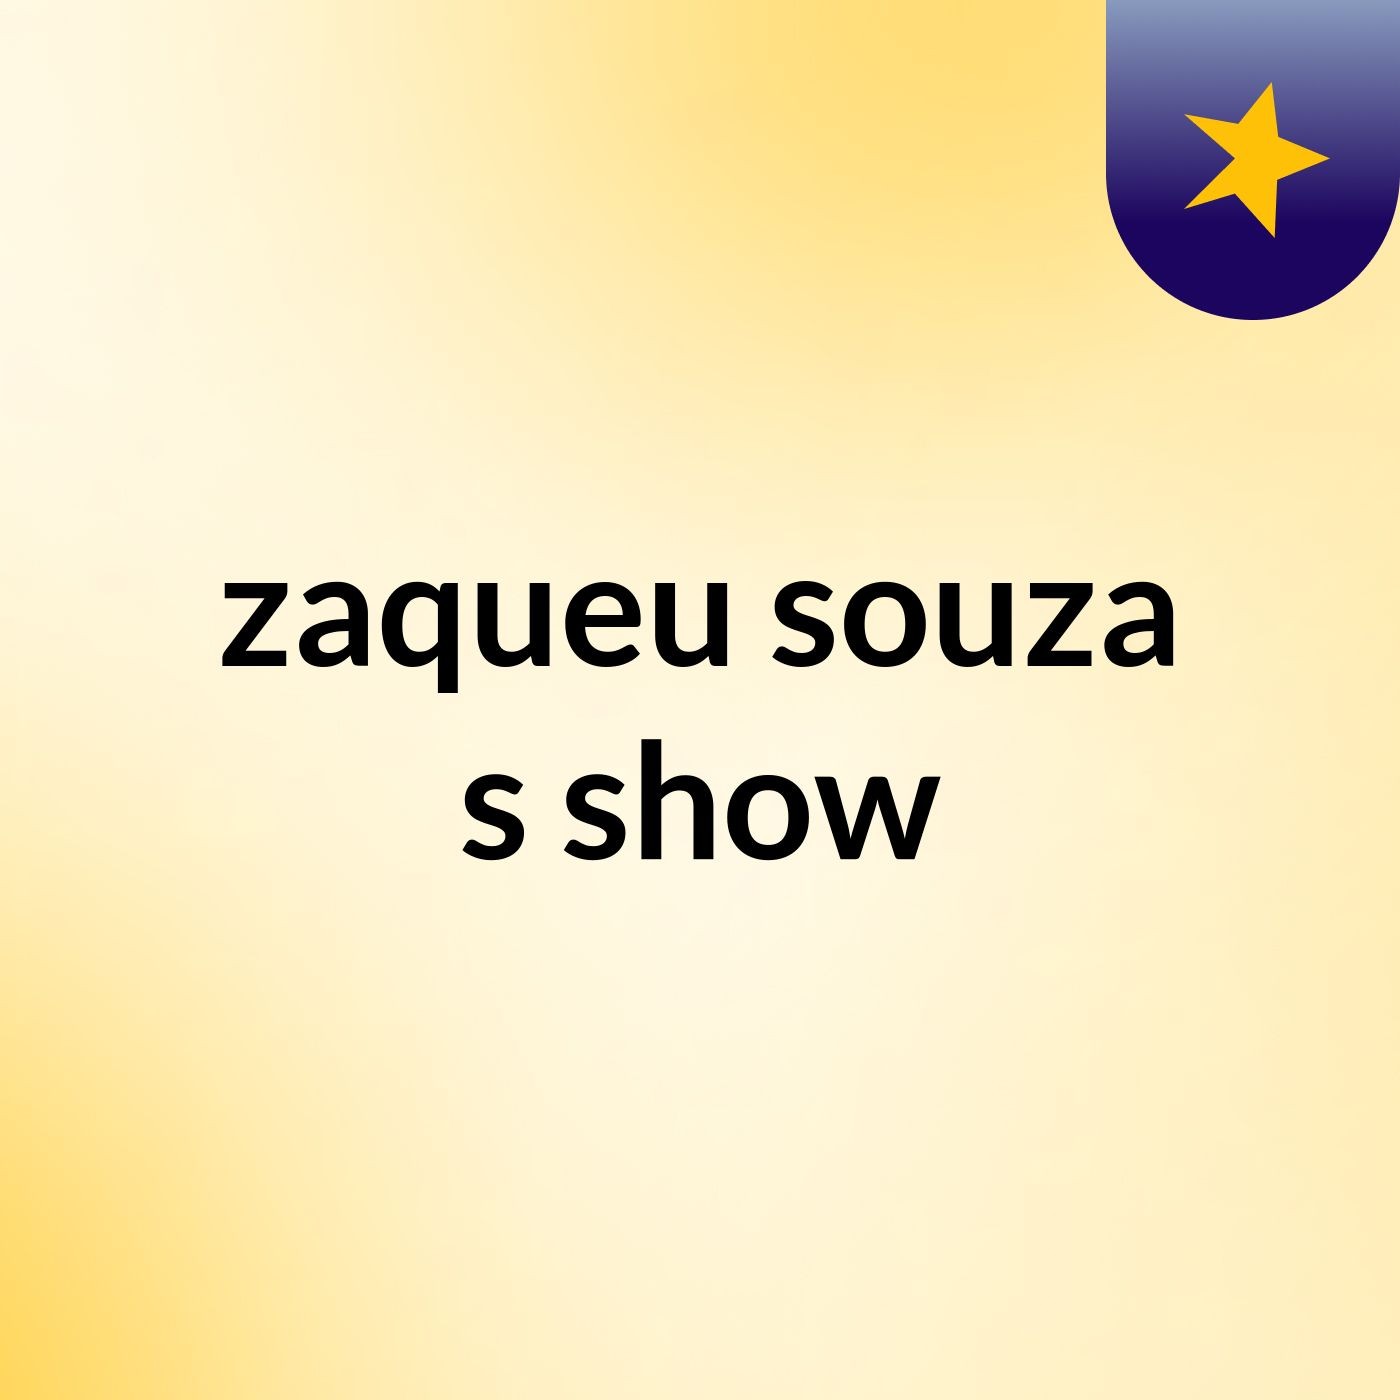 zaqueu souza's show